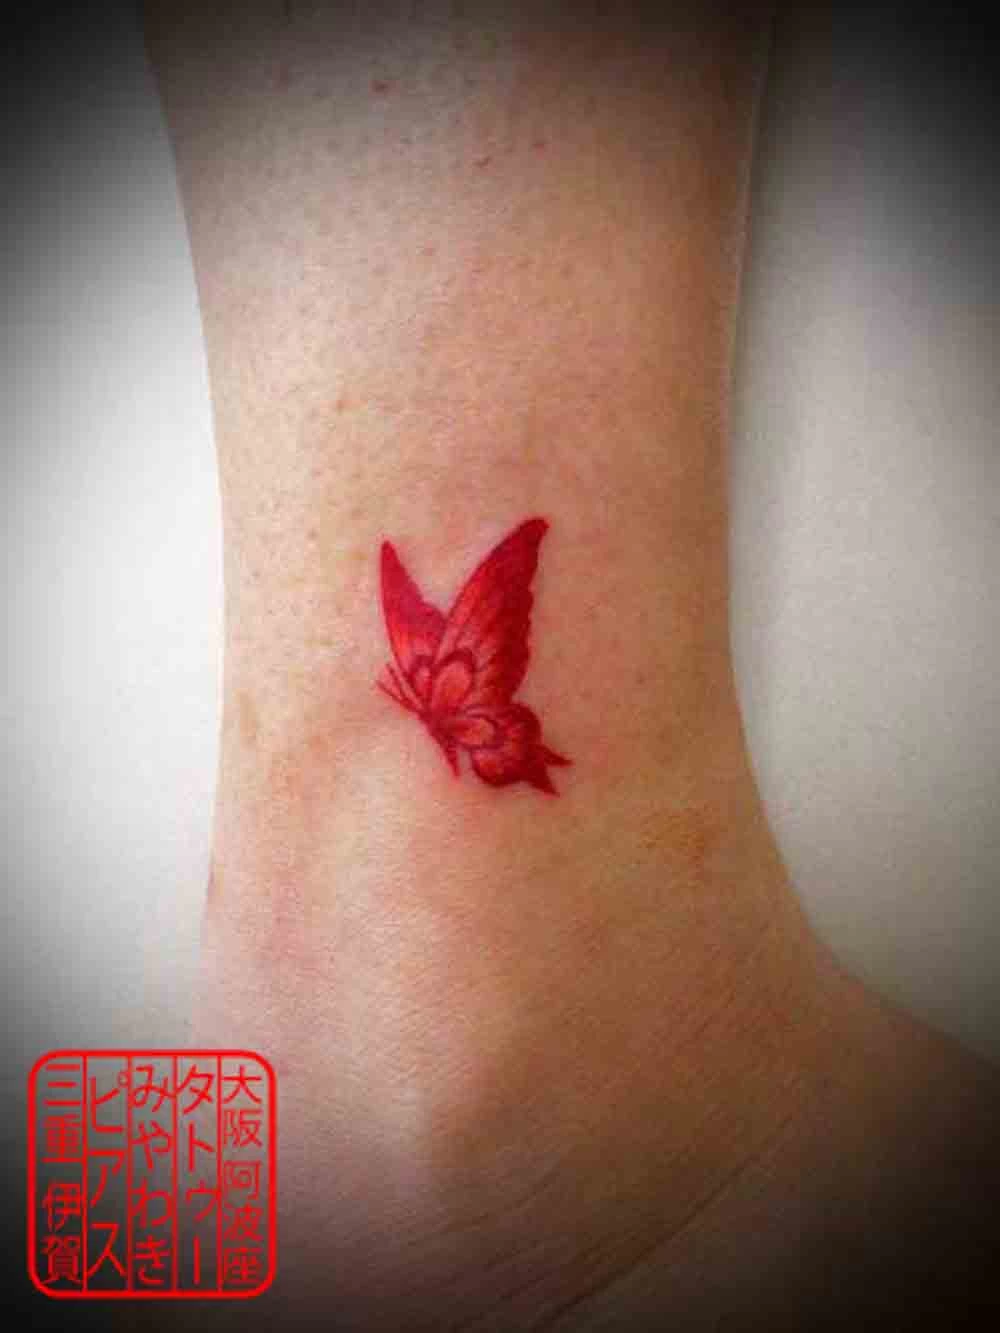 足首に赤い蝶